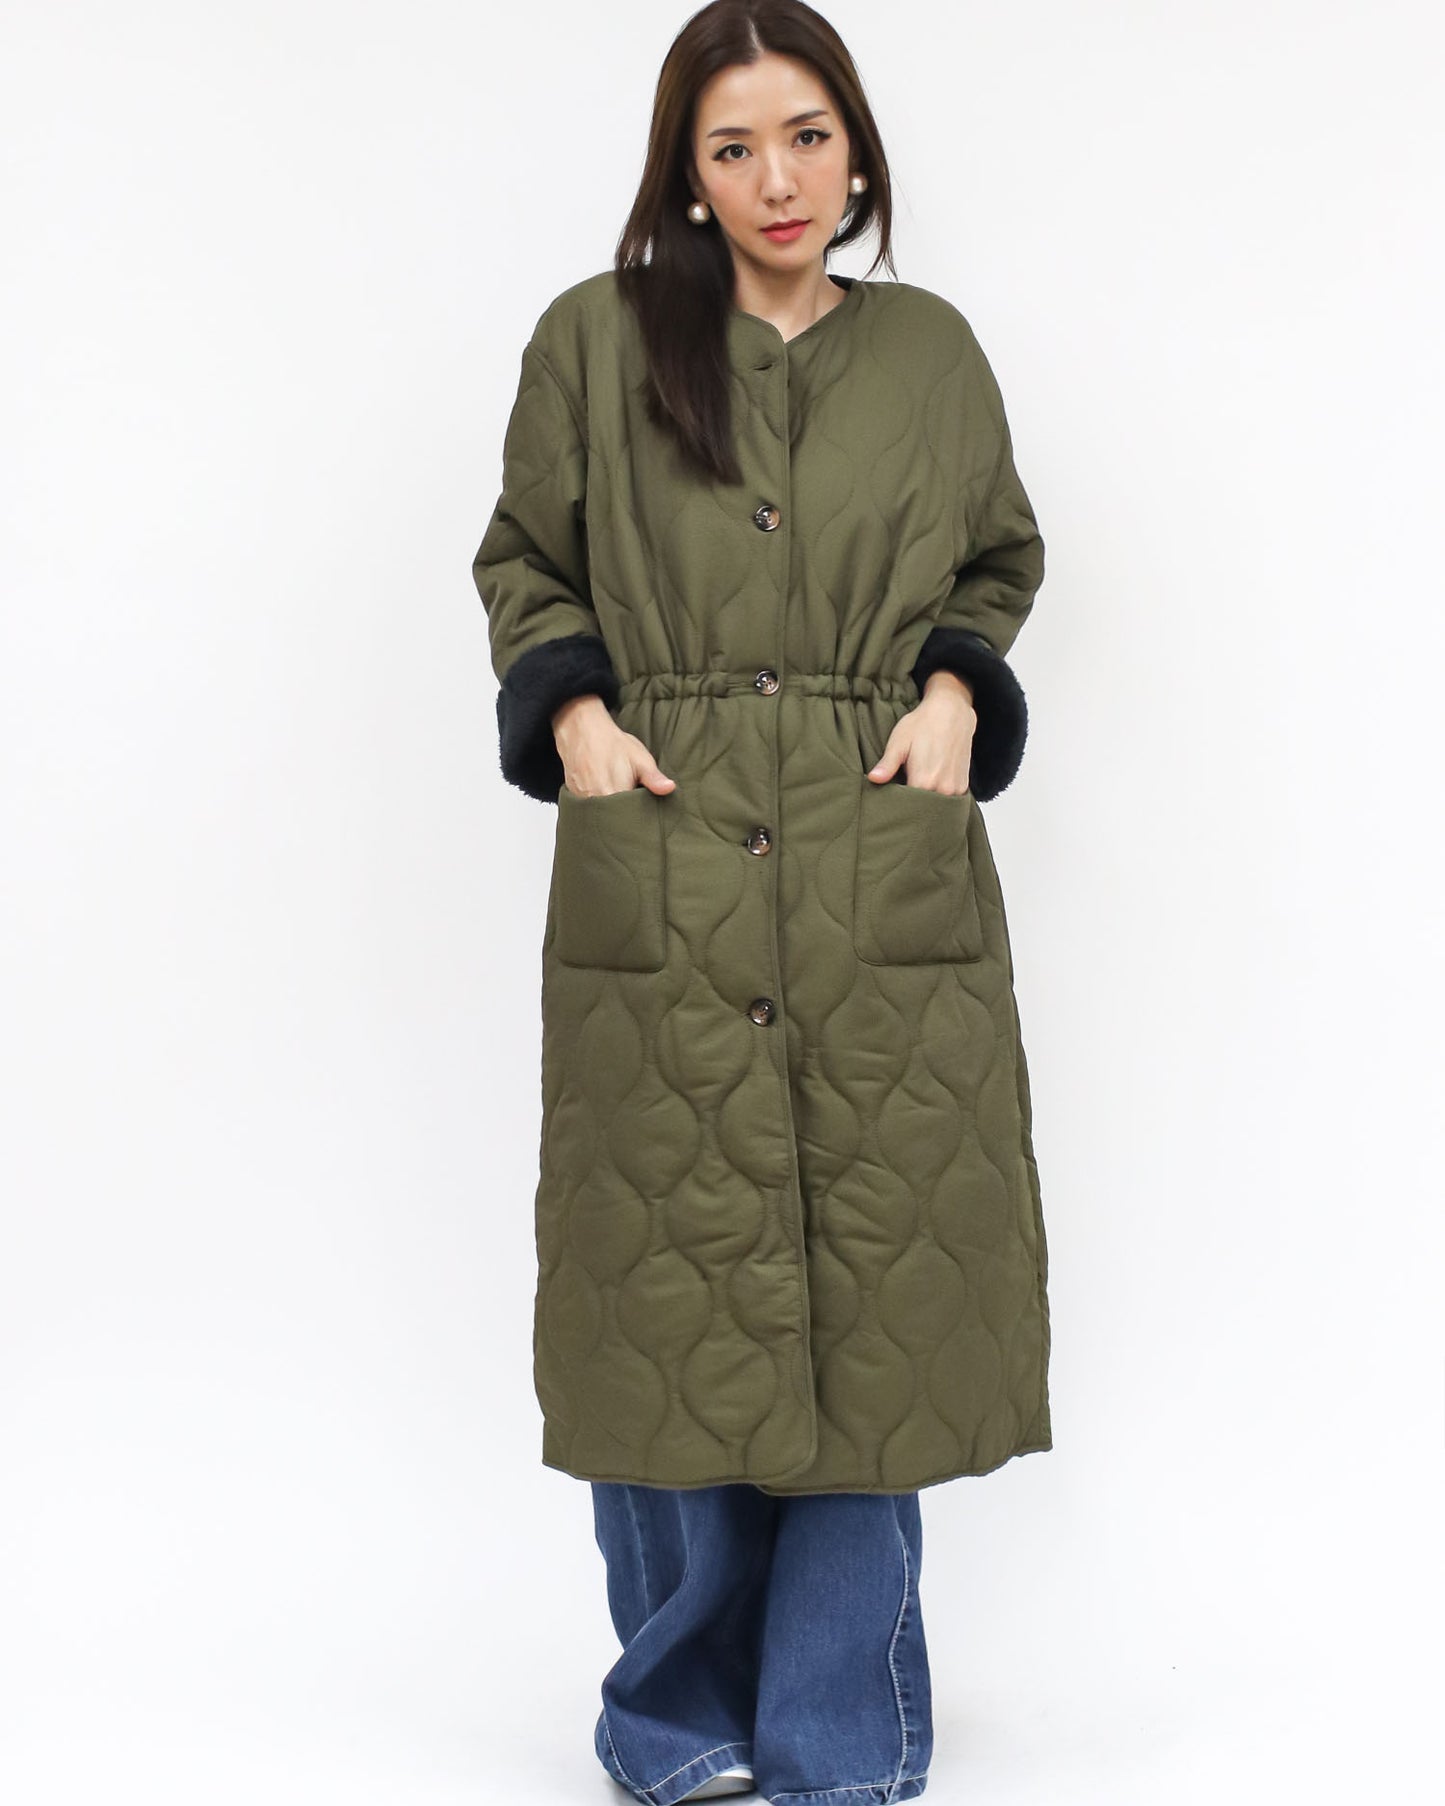 green quilted fleece longline jacket